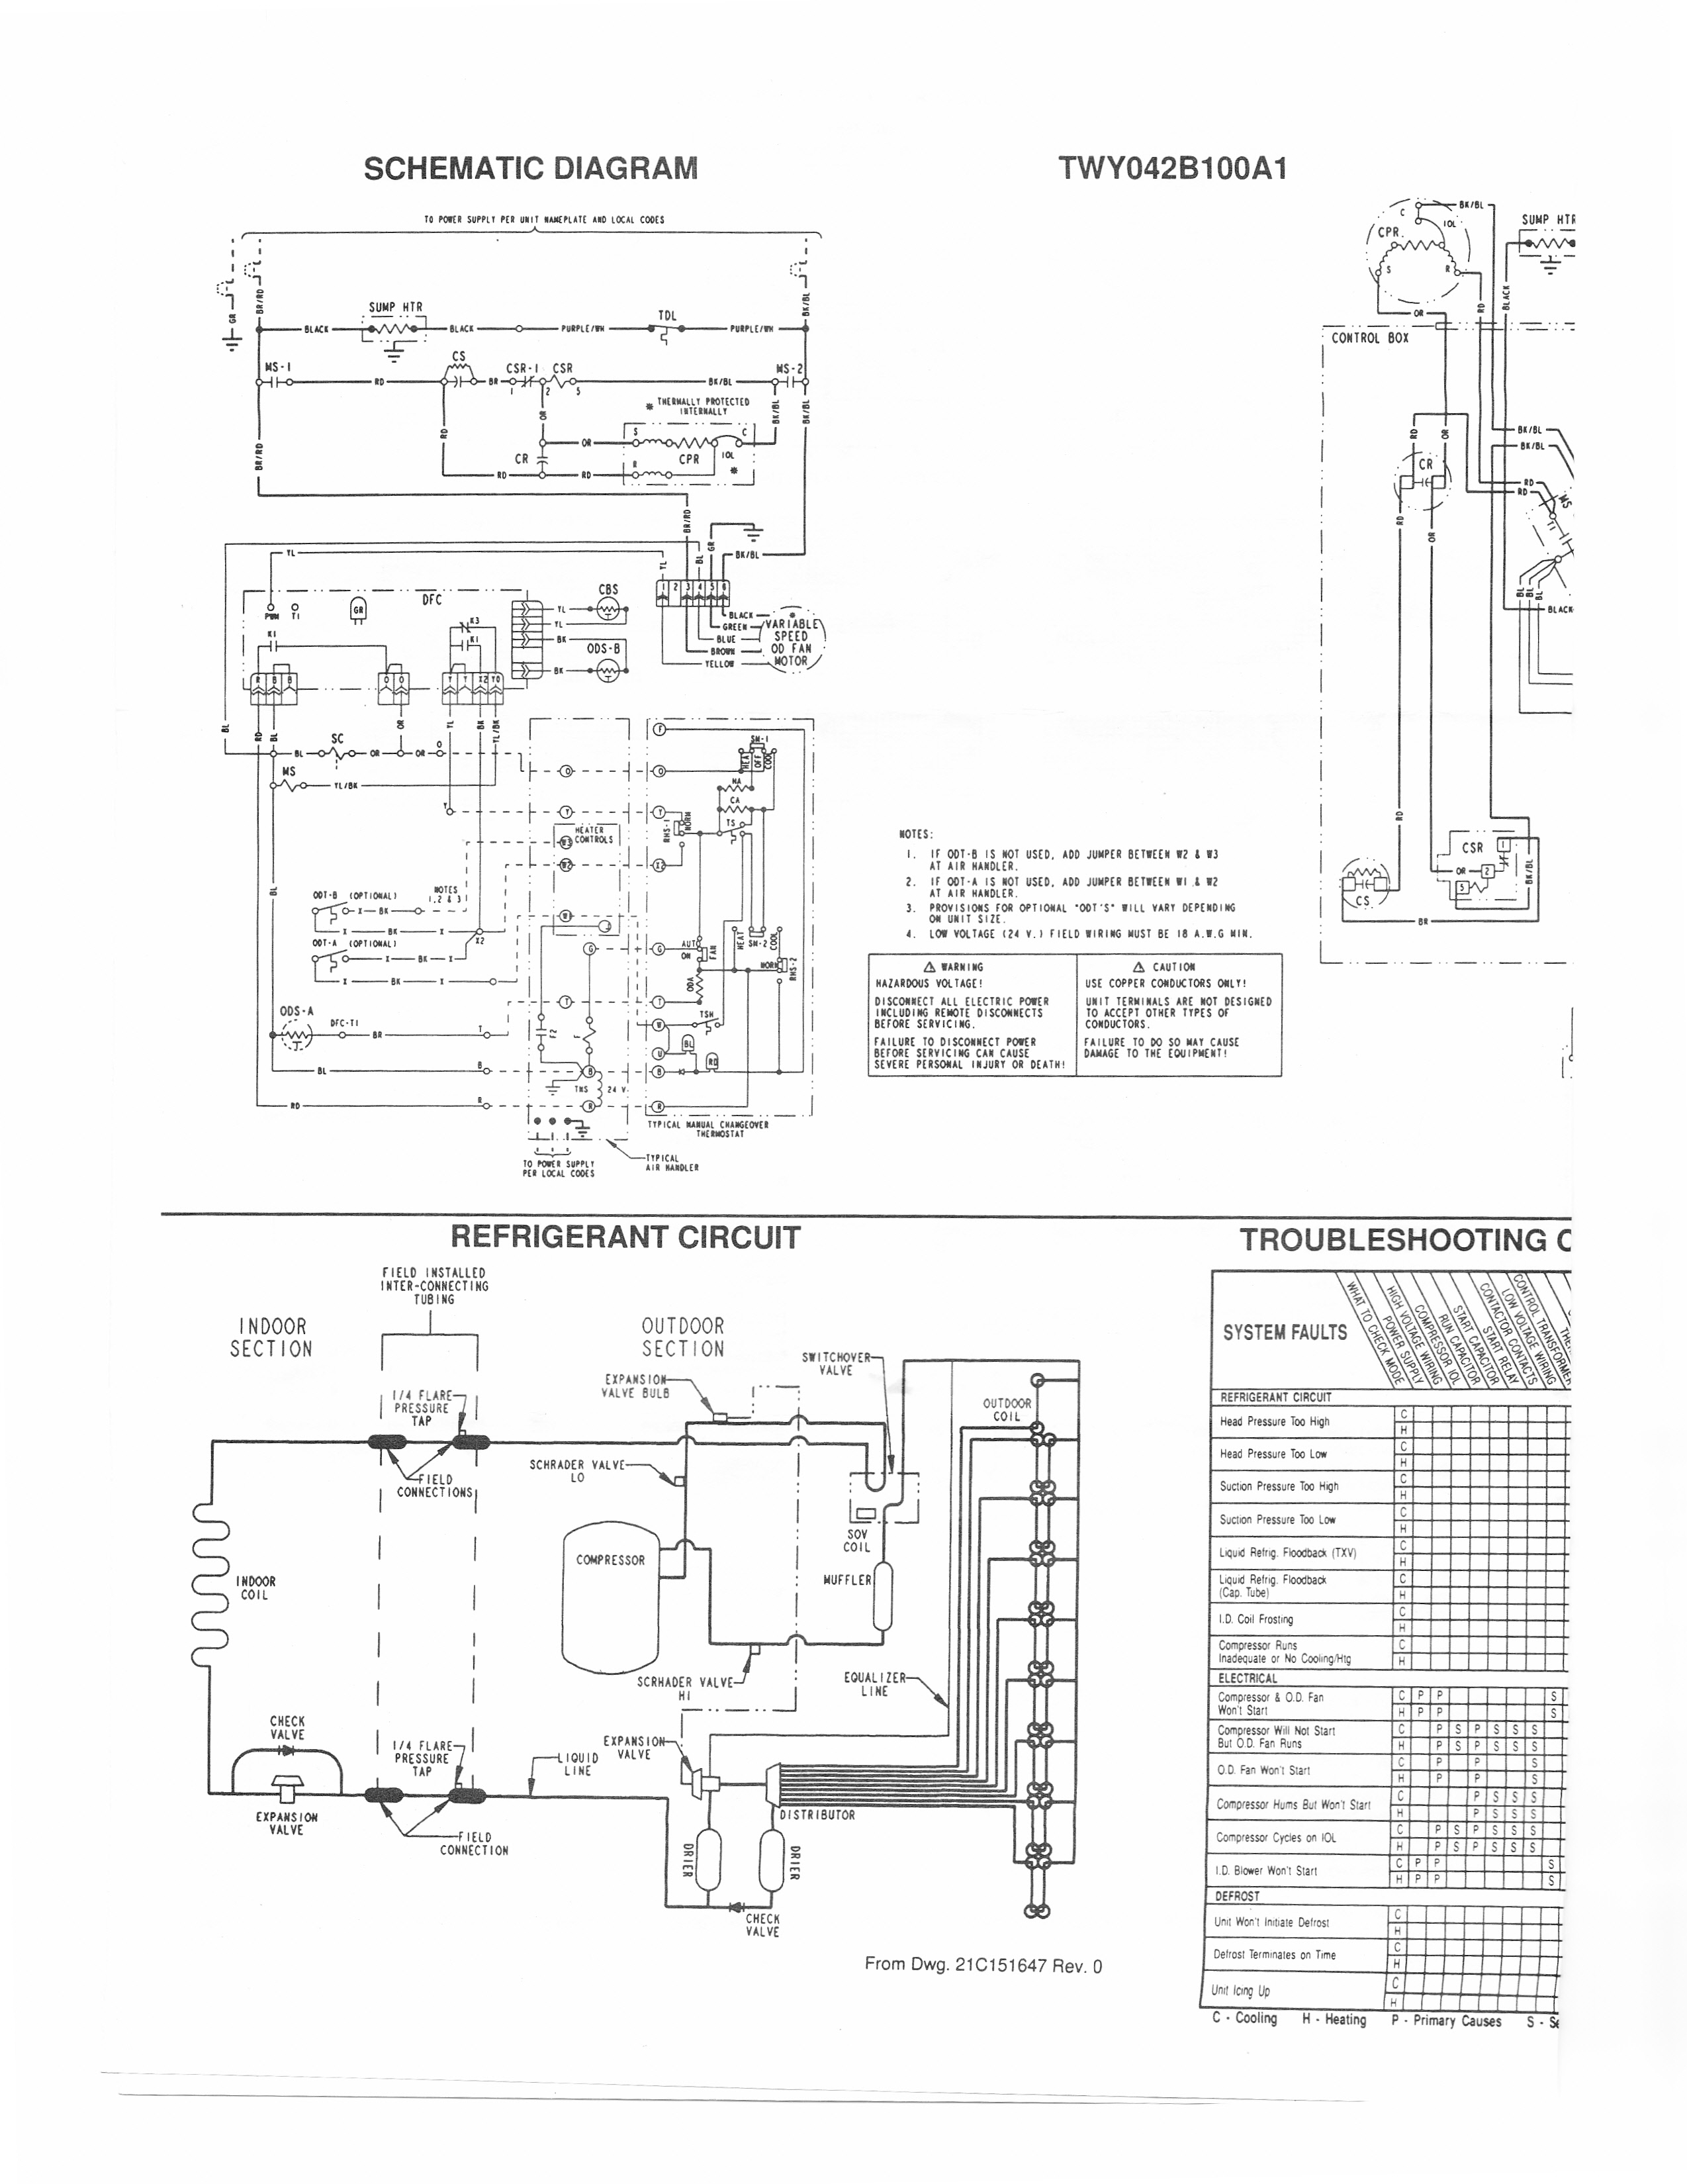 I Have A Trane Xl1400 Heat Pump (Model Twy042B100A1) And The Control - Trane Heat Pump Wiring Diagram